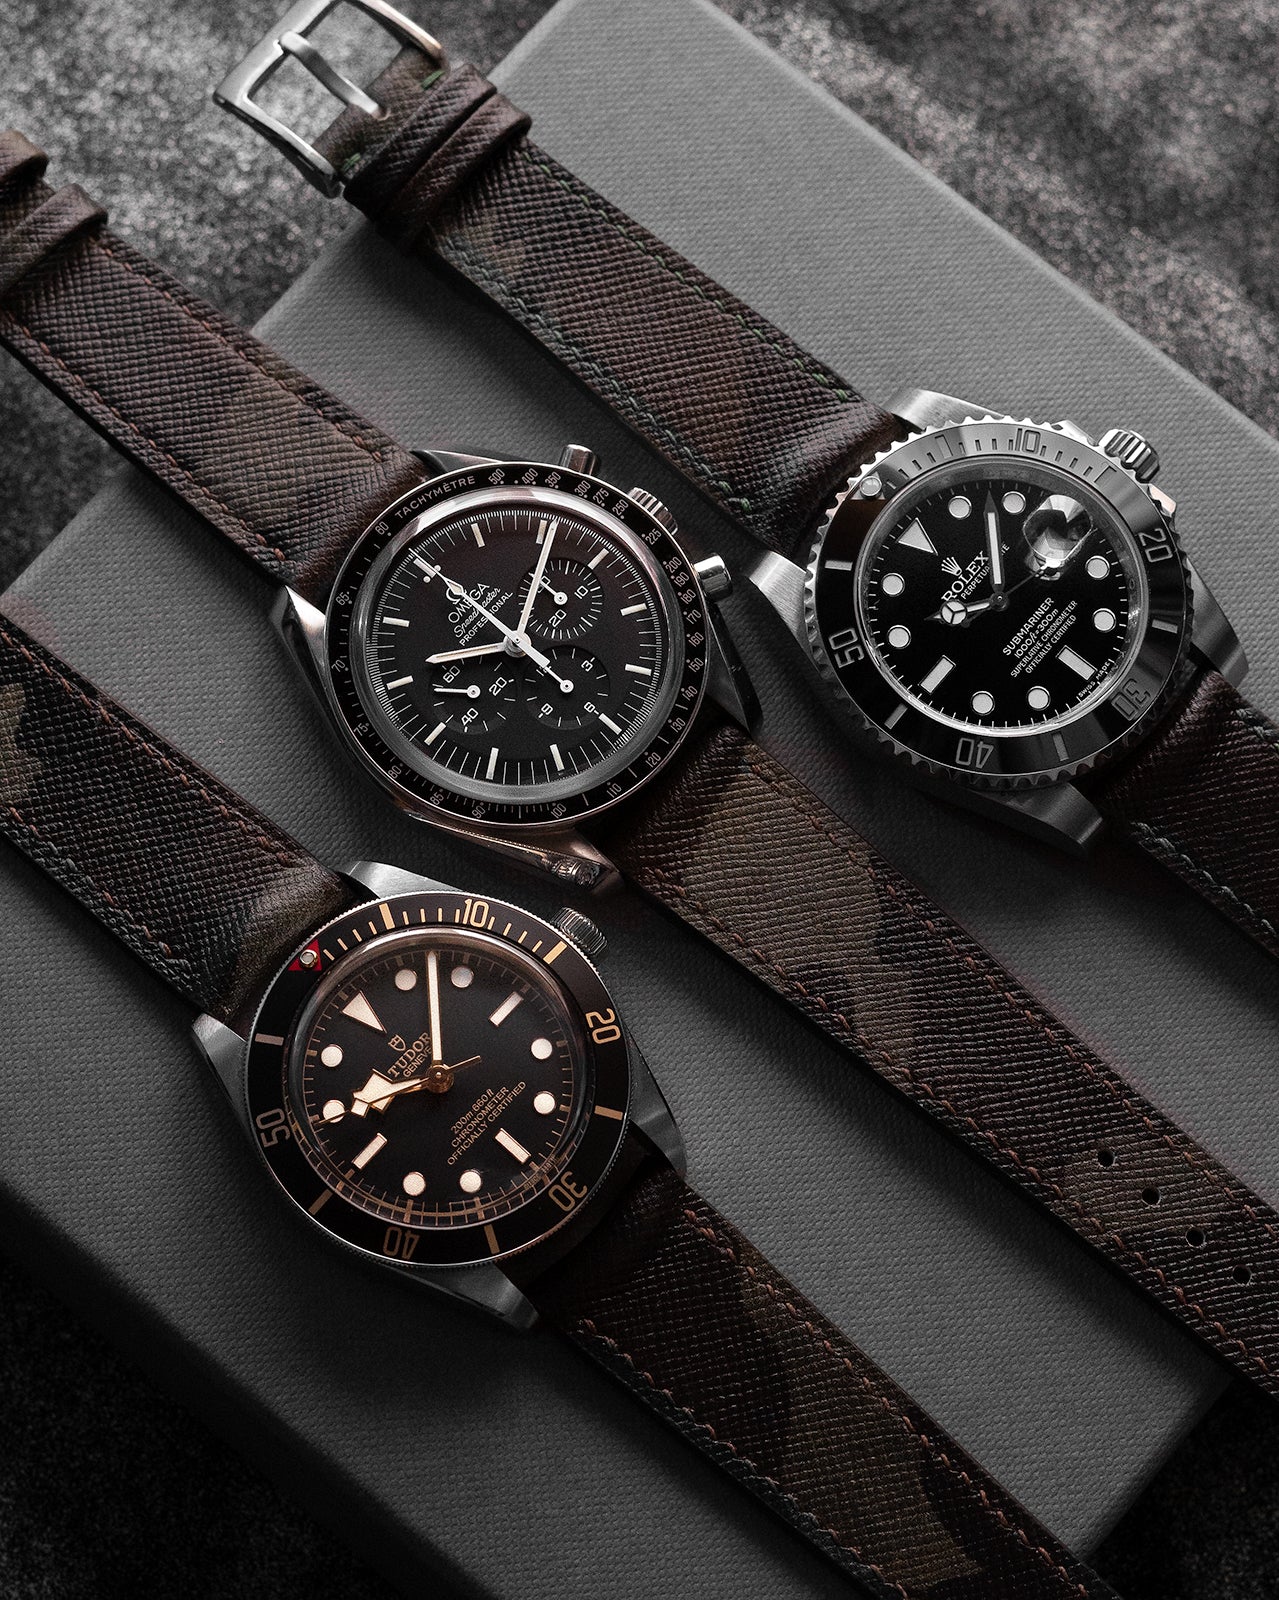 Camo Vachetta Leather Watch Strap — Vulture Premium